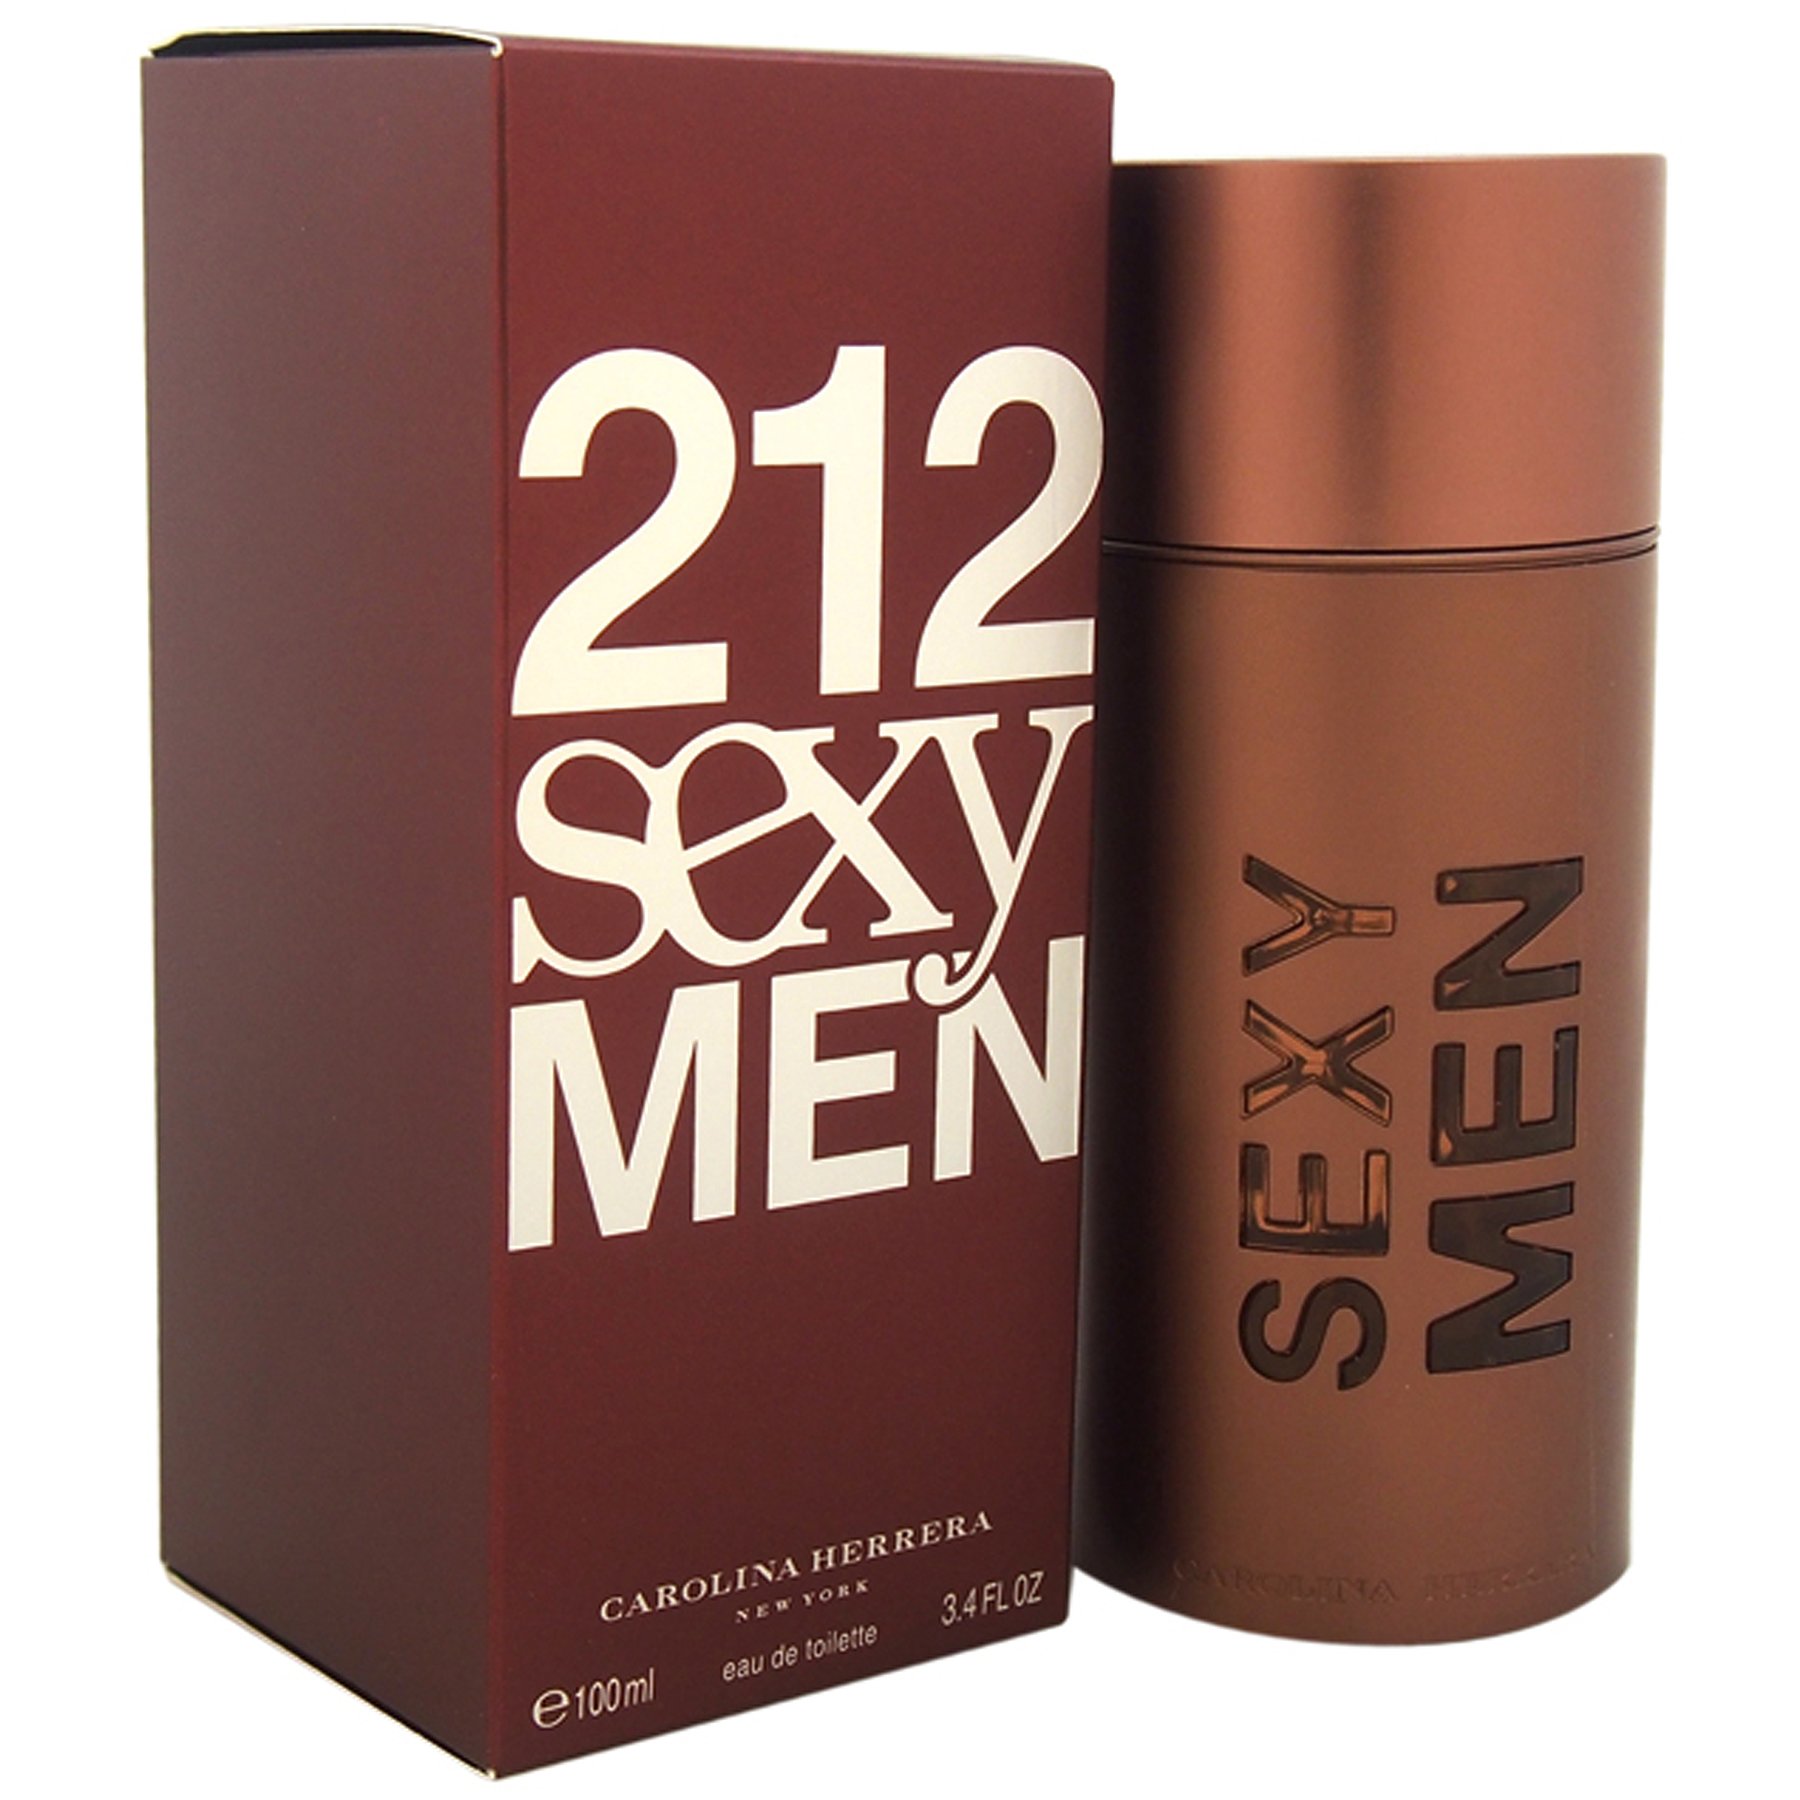 Carolina Herrera Ch 212 Sexy Men Edt 100 Ml New Perfume Bangladesh